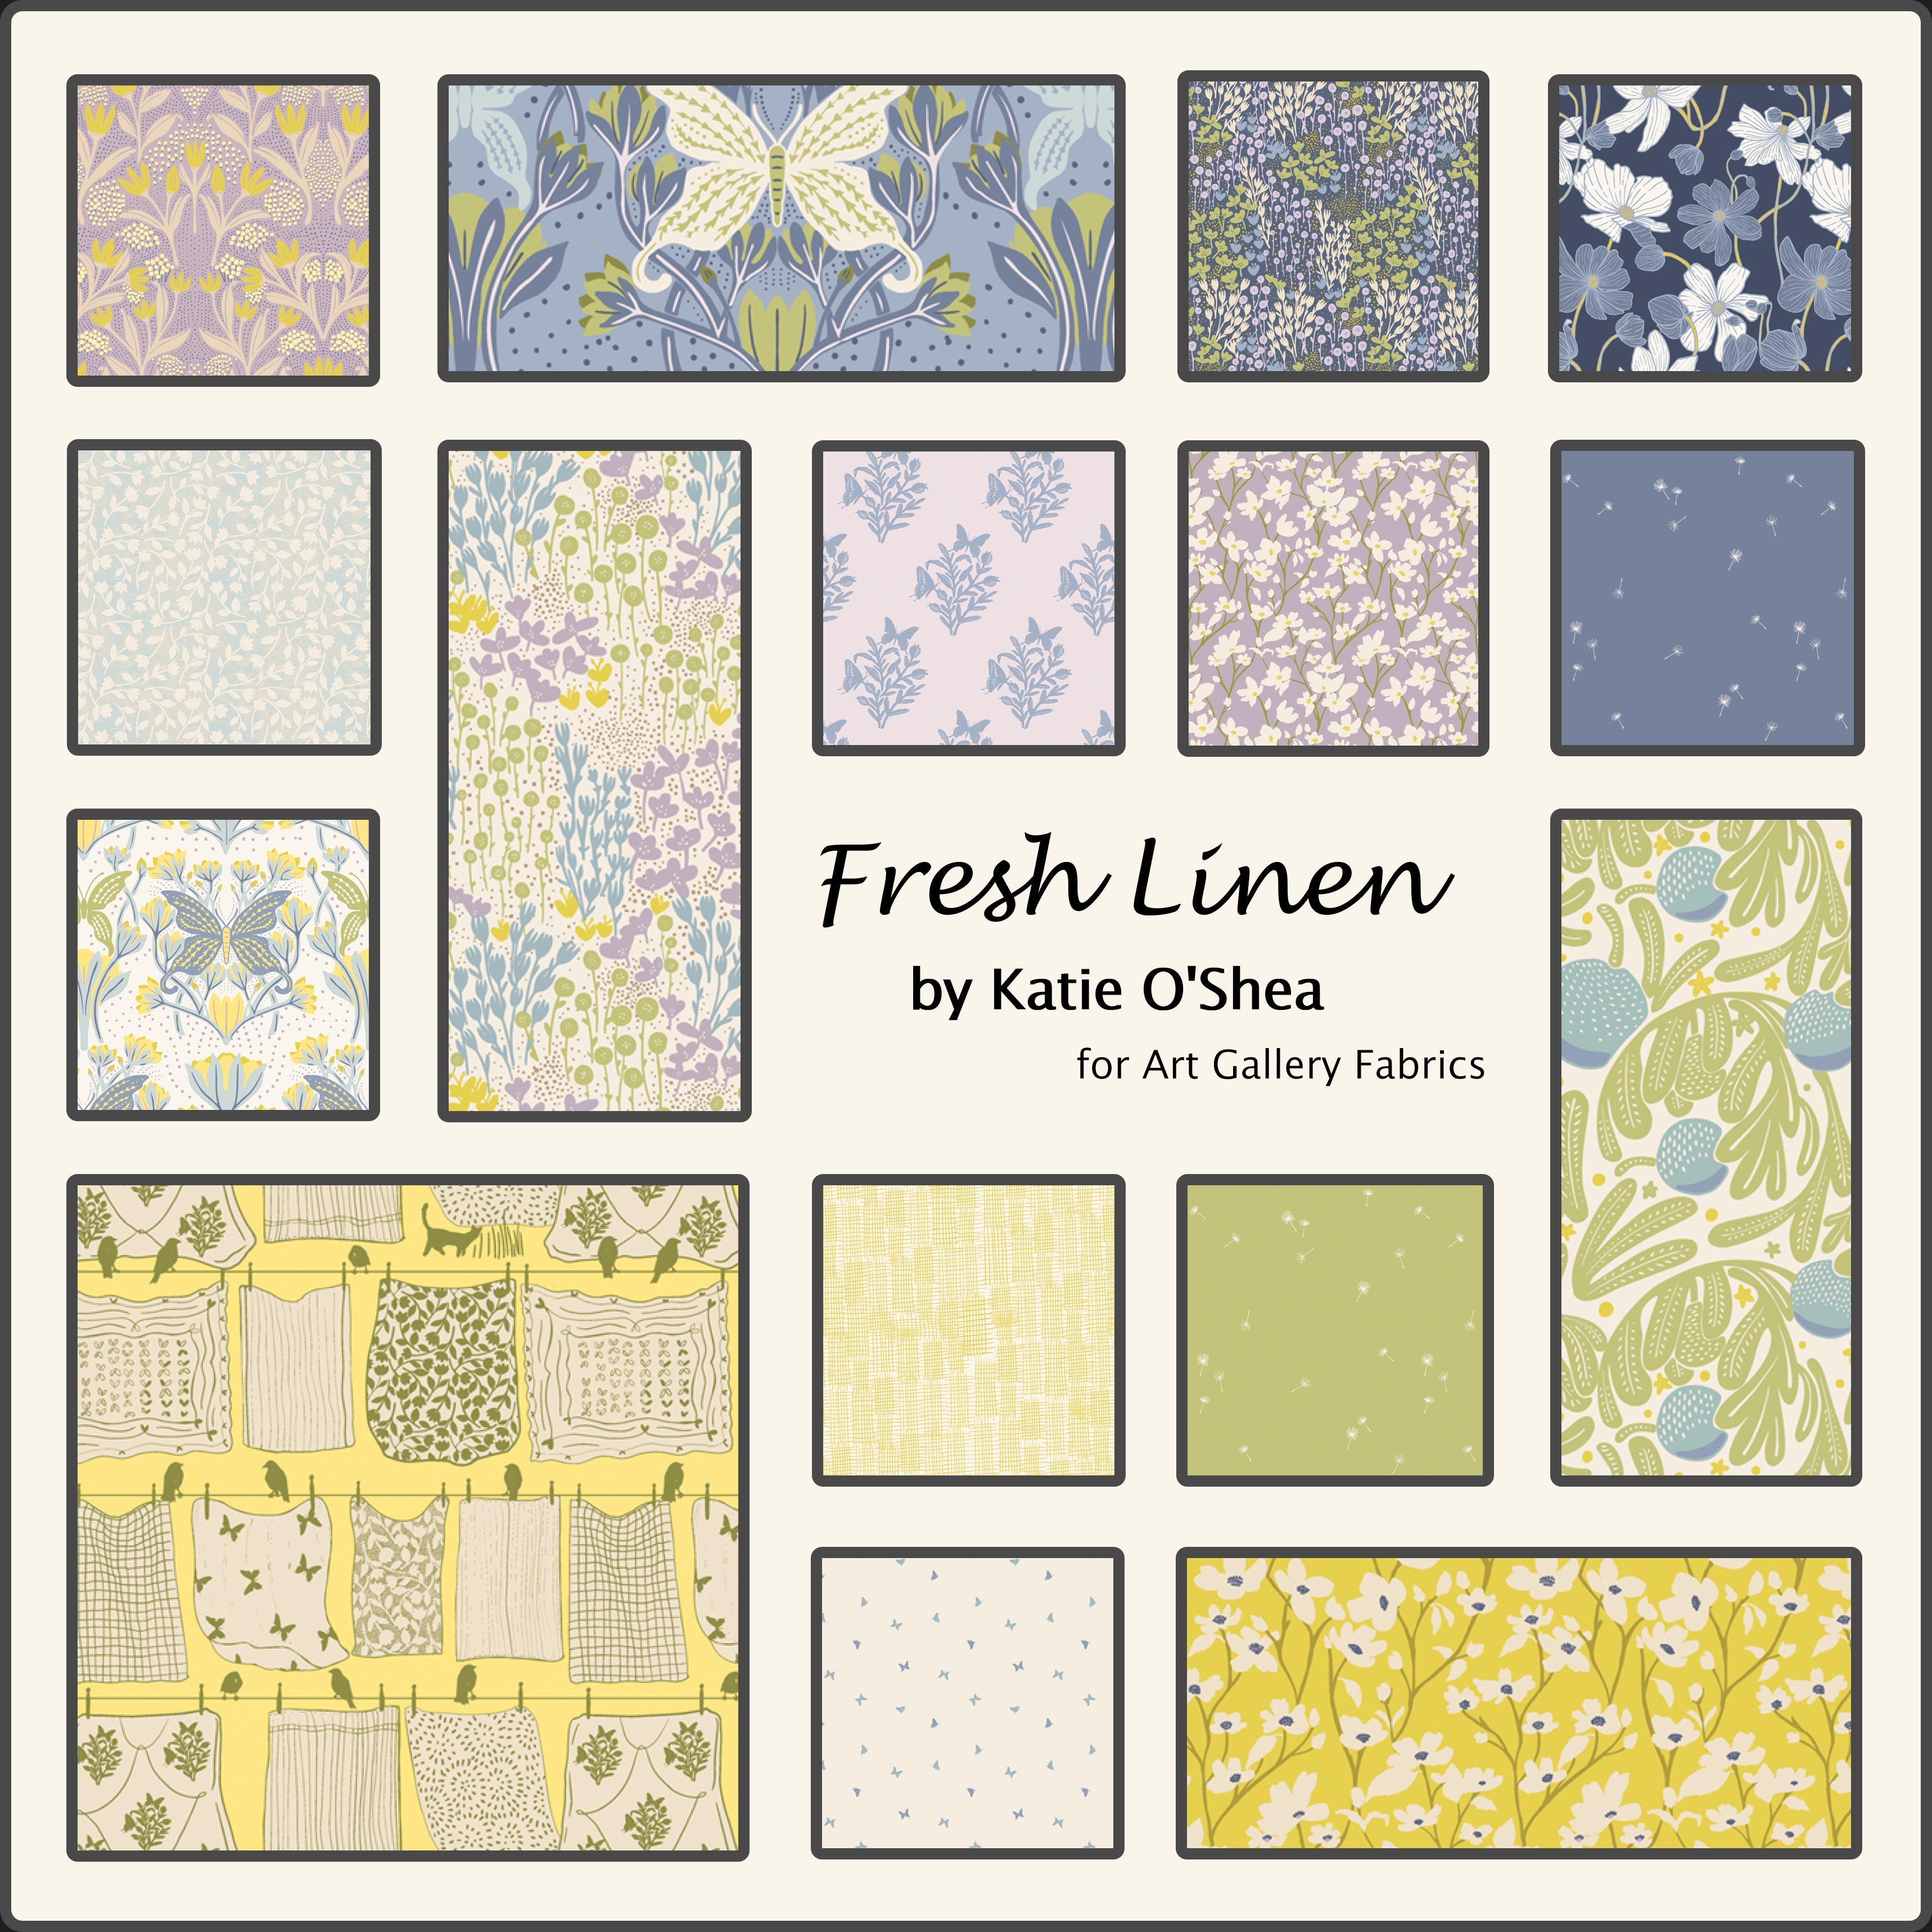 Fresh Linen by Katie O'Shea